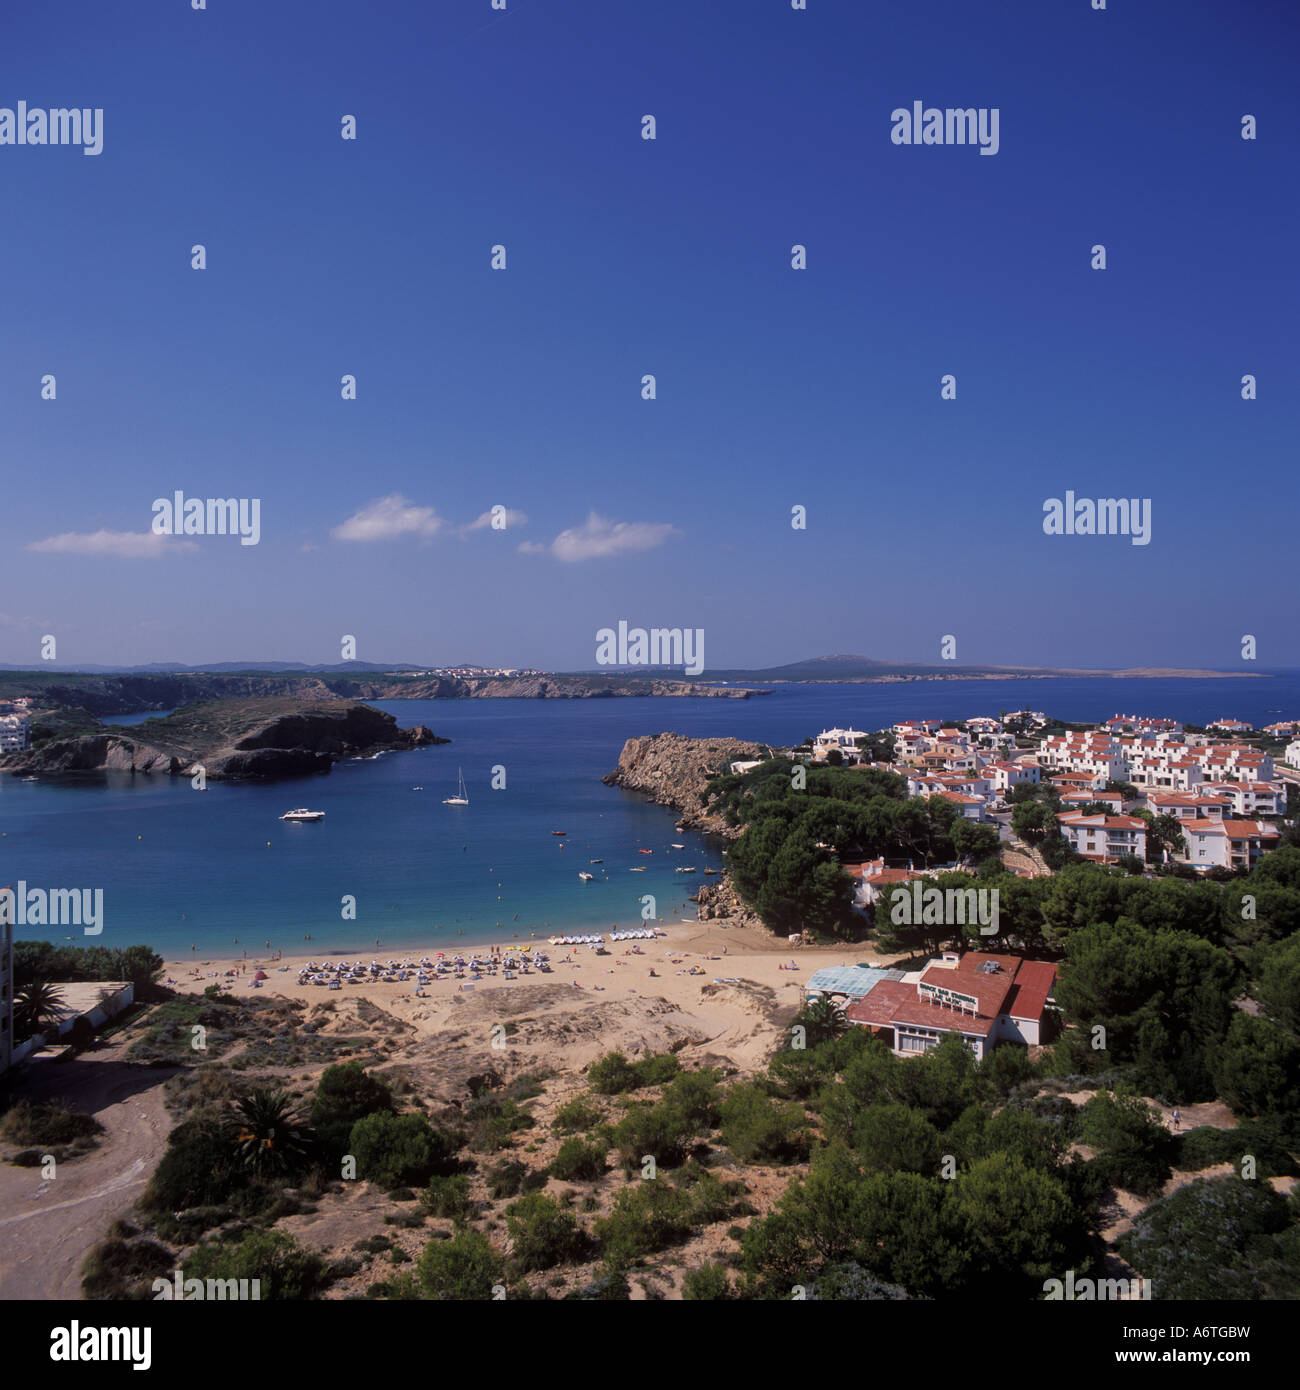 Vista aérea - sección de la playa y la bahía de recreo anclados + + urbanización - Arenal d'en Castell, costa norte de Menorca. Foto de stock